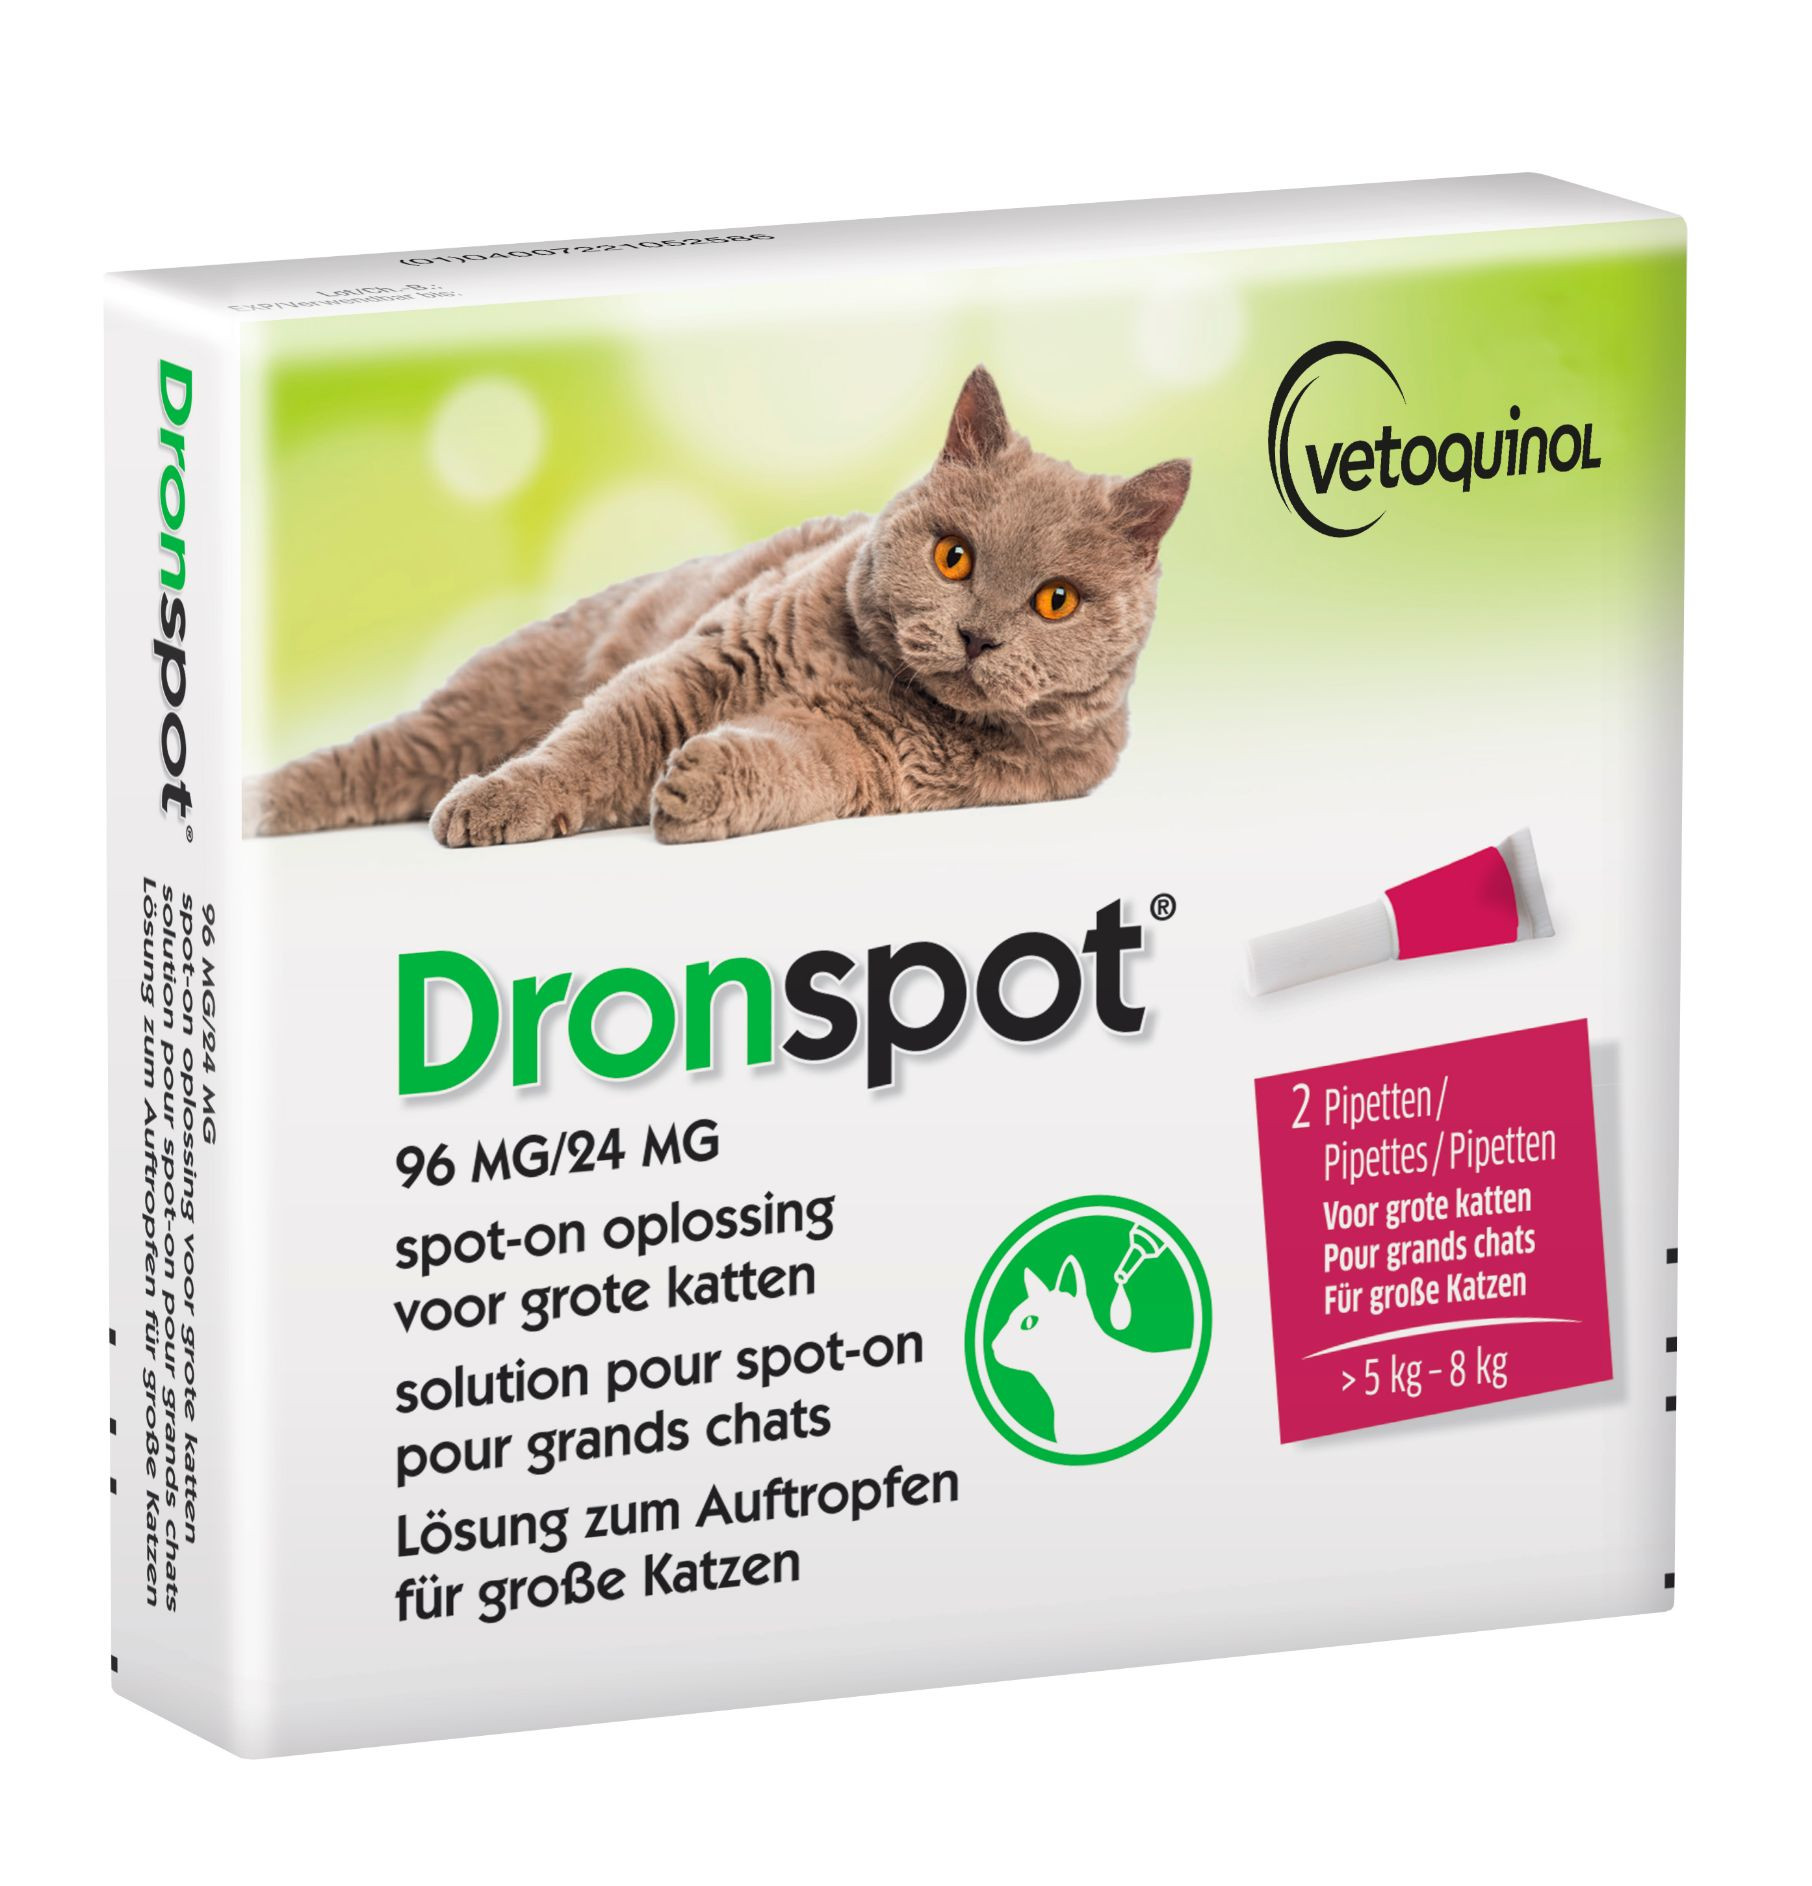 Dronspot 96 mg/24 mg Spot-on oplossing voor katten (5- 8 kg)